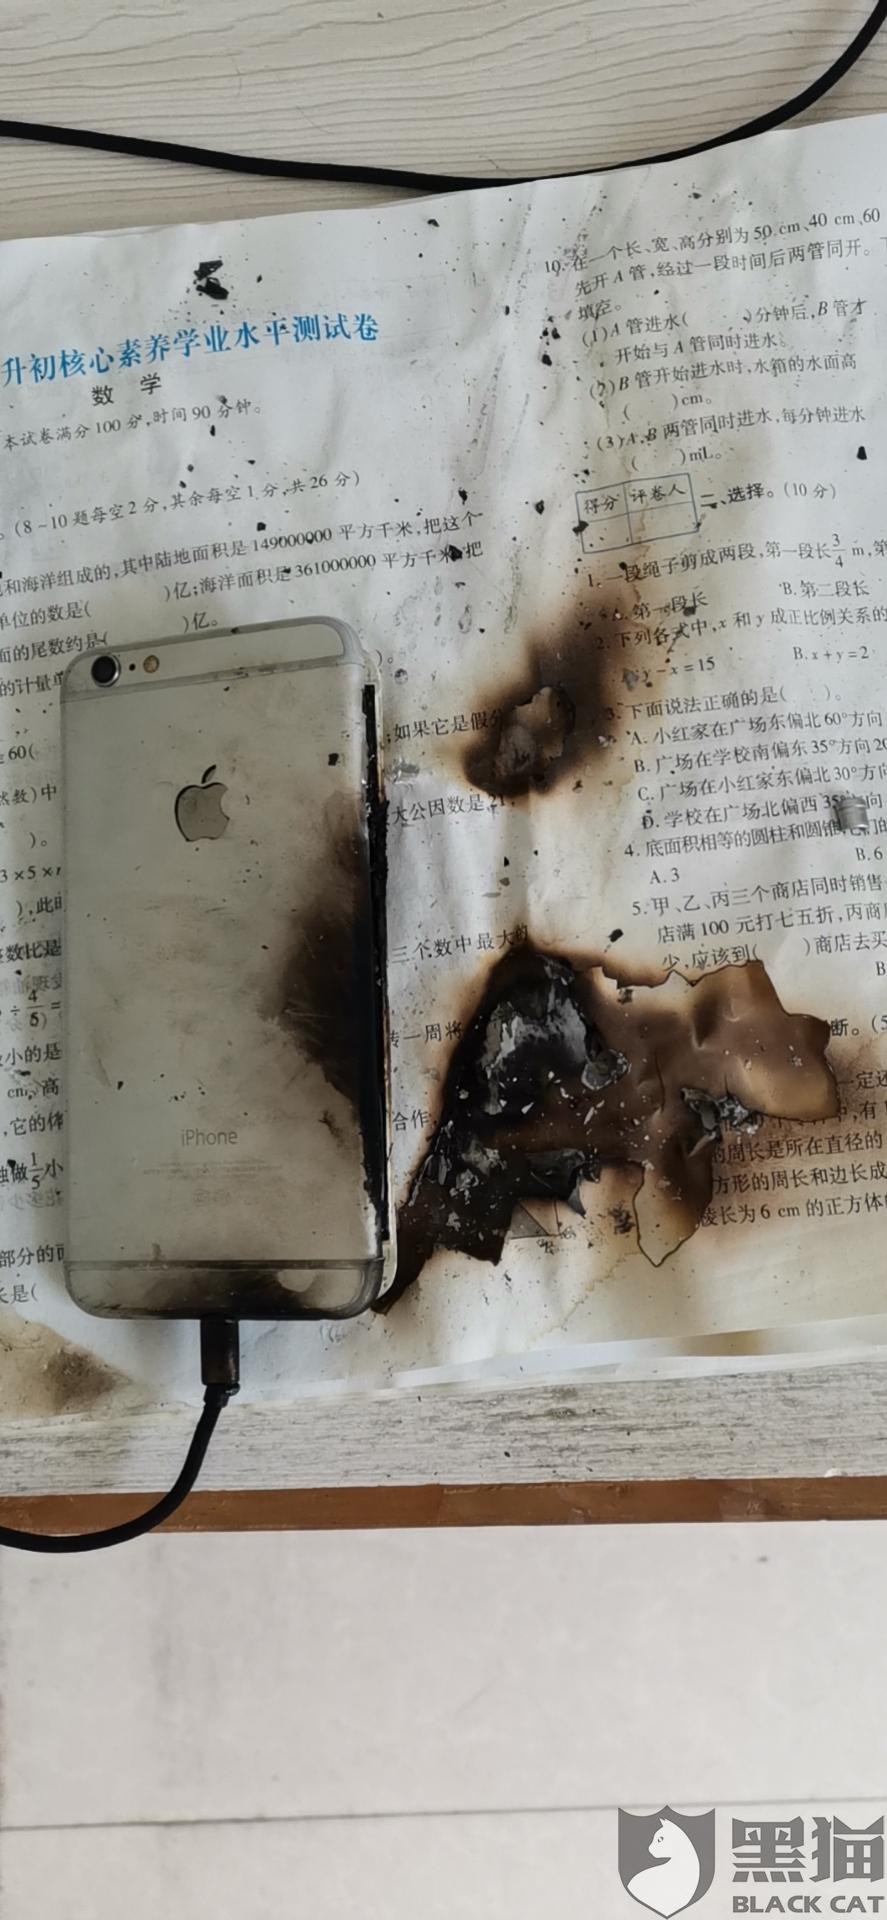 黑猫投诉pantoscopic旗舰店购买苹果手机电池爆炸起火